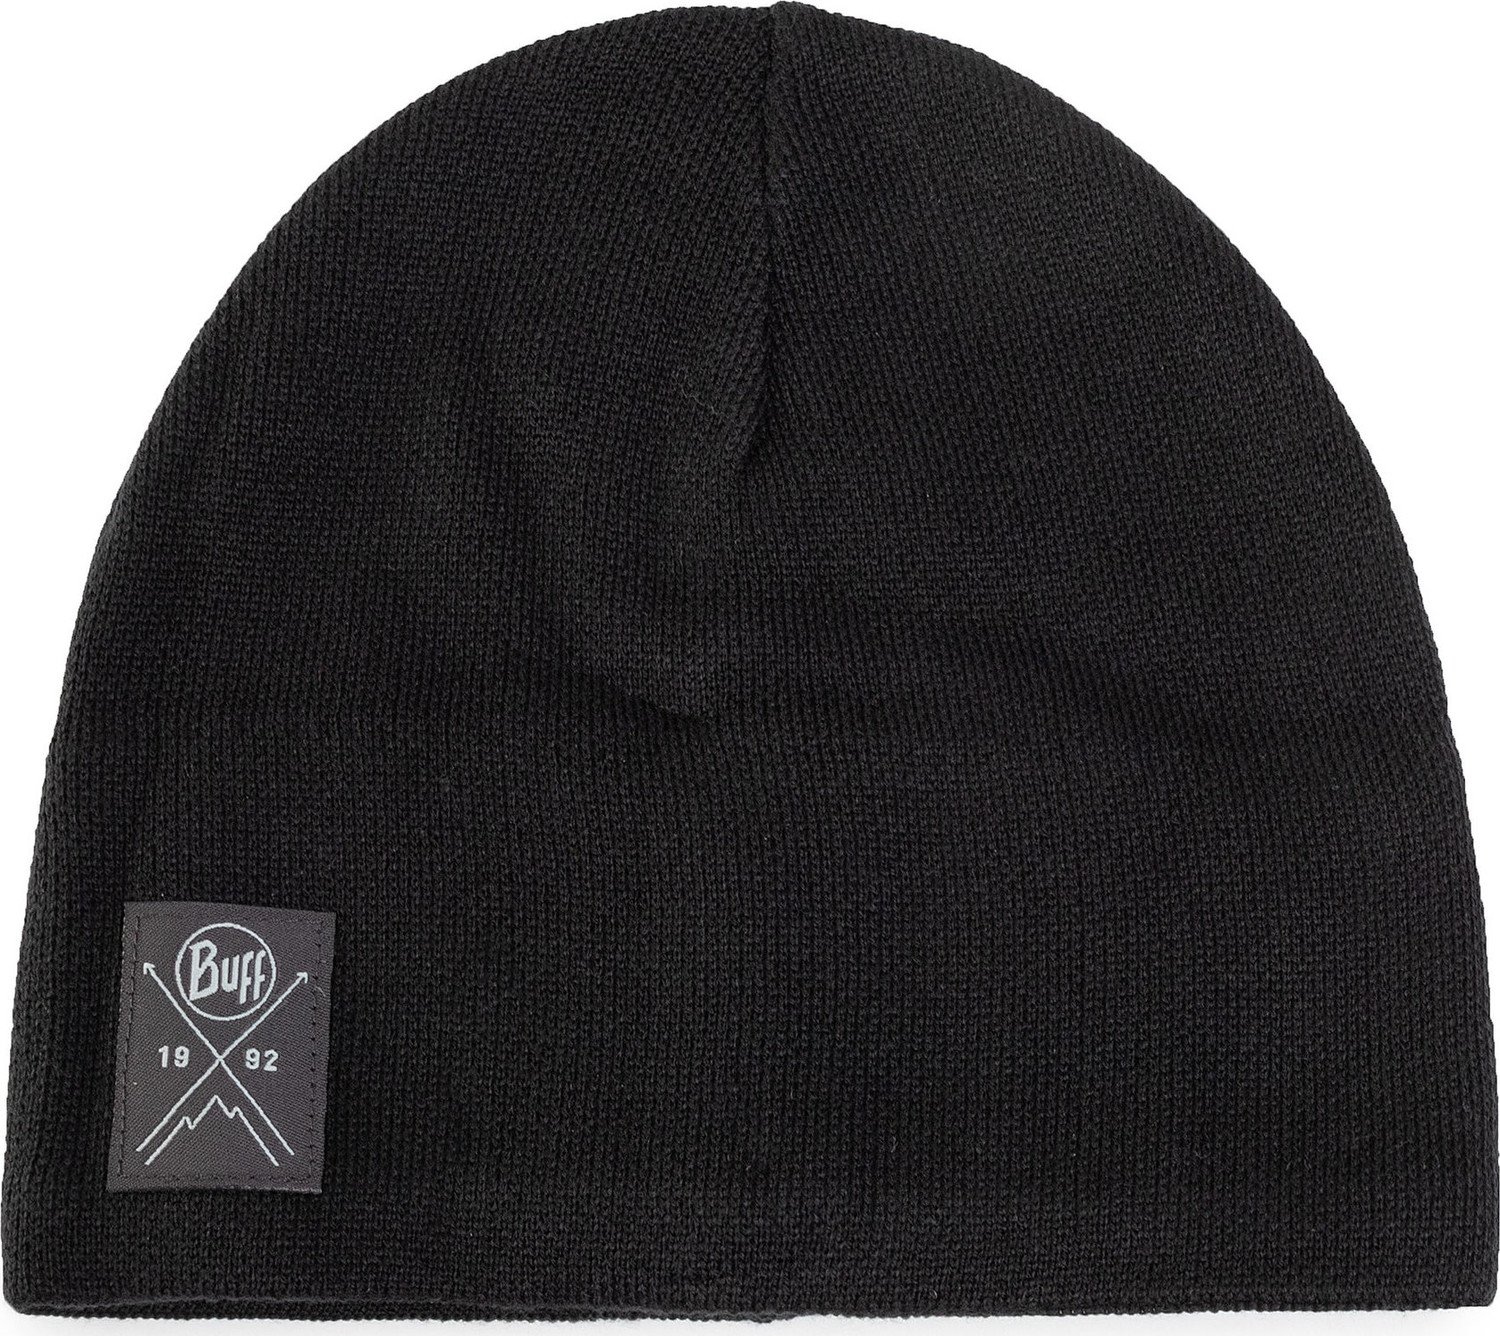 Čepice Buff Knitted & Polar Hat 113519.999.10.00 Solid Black